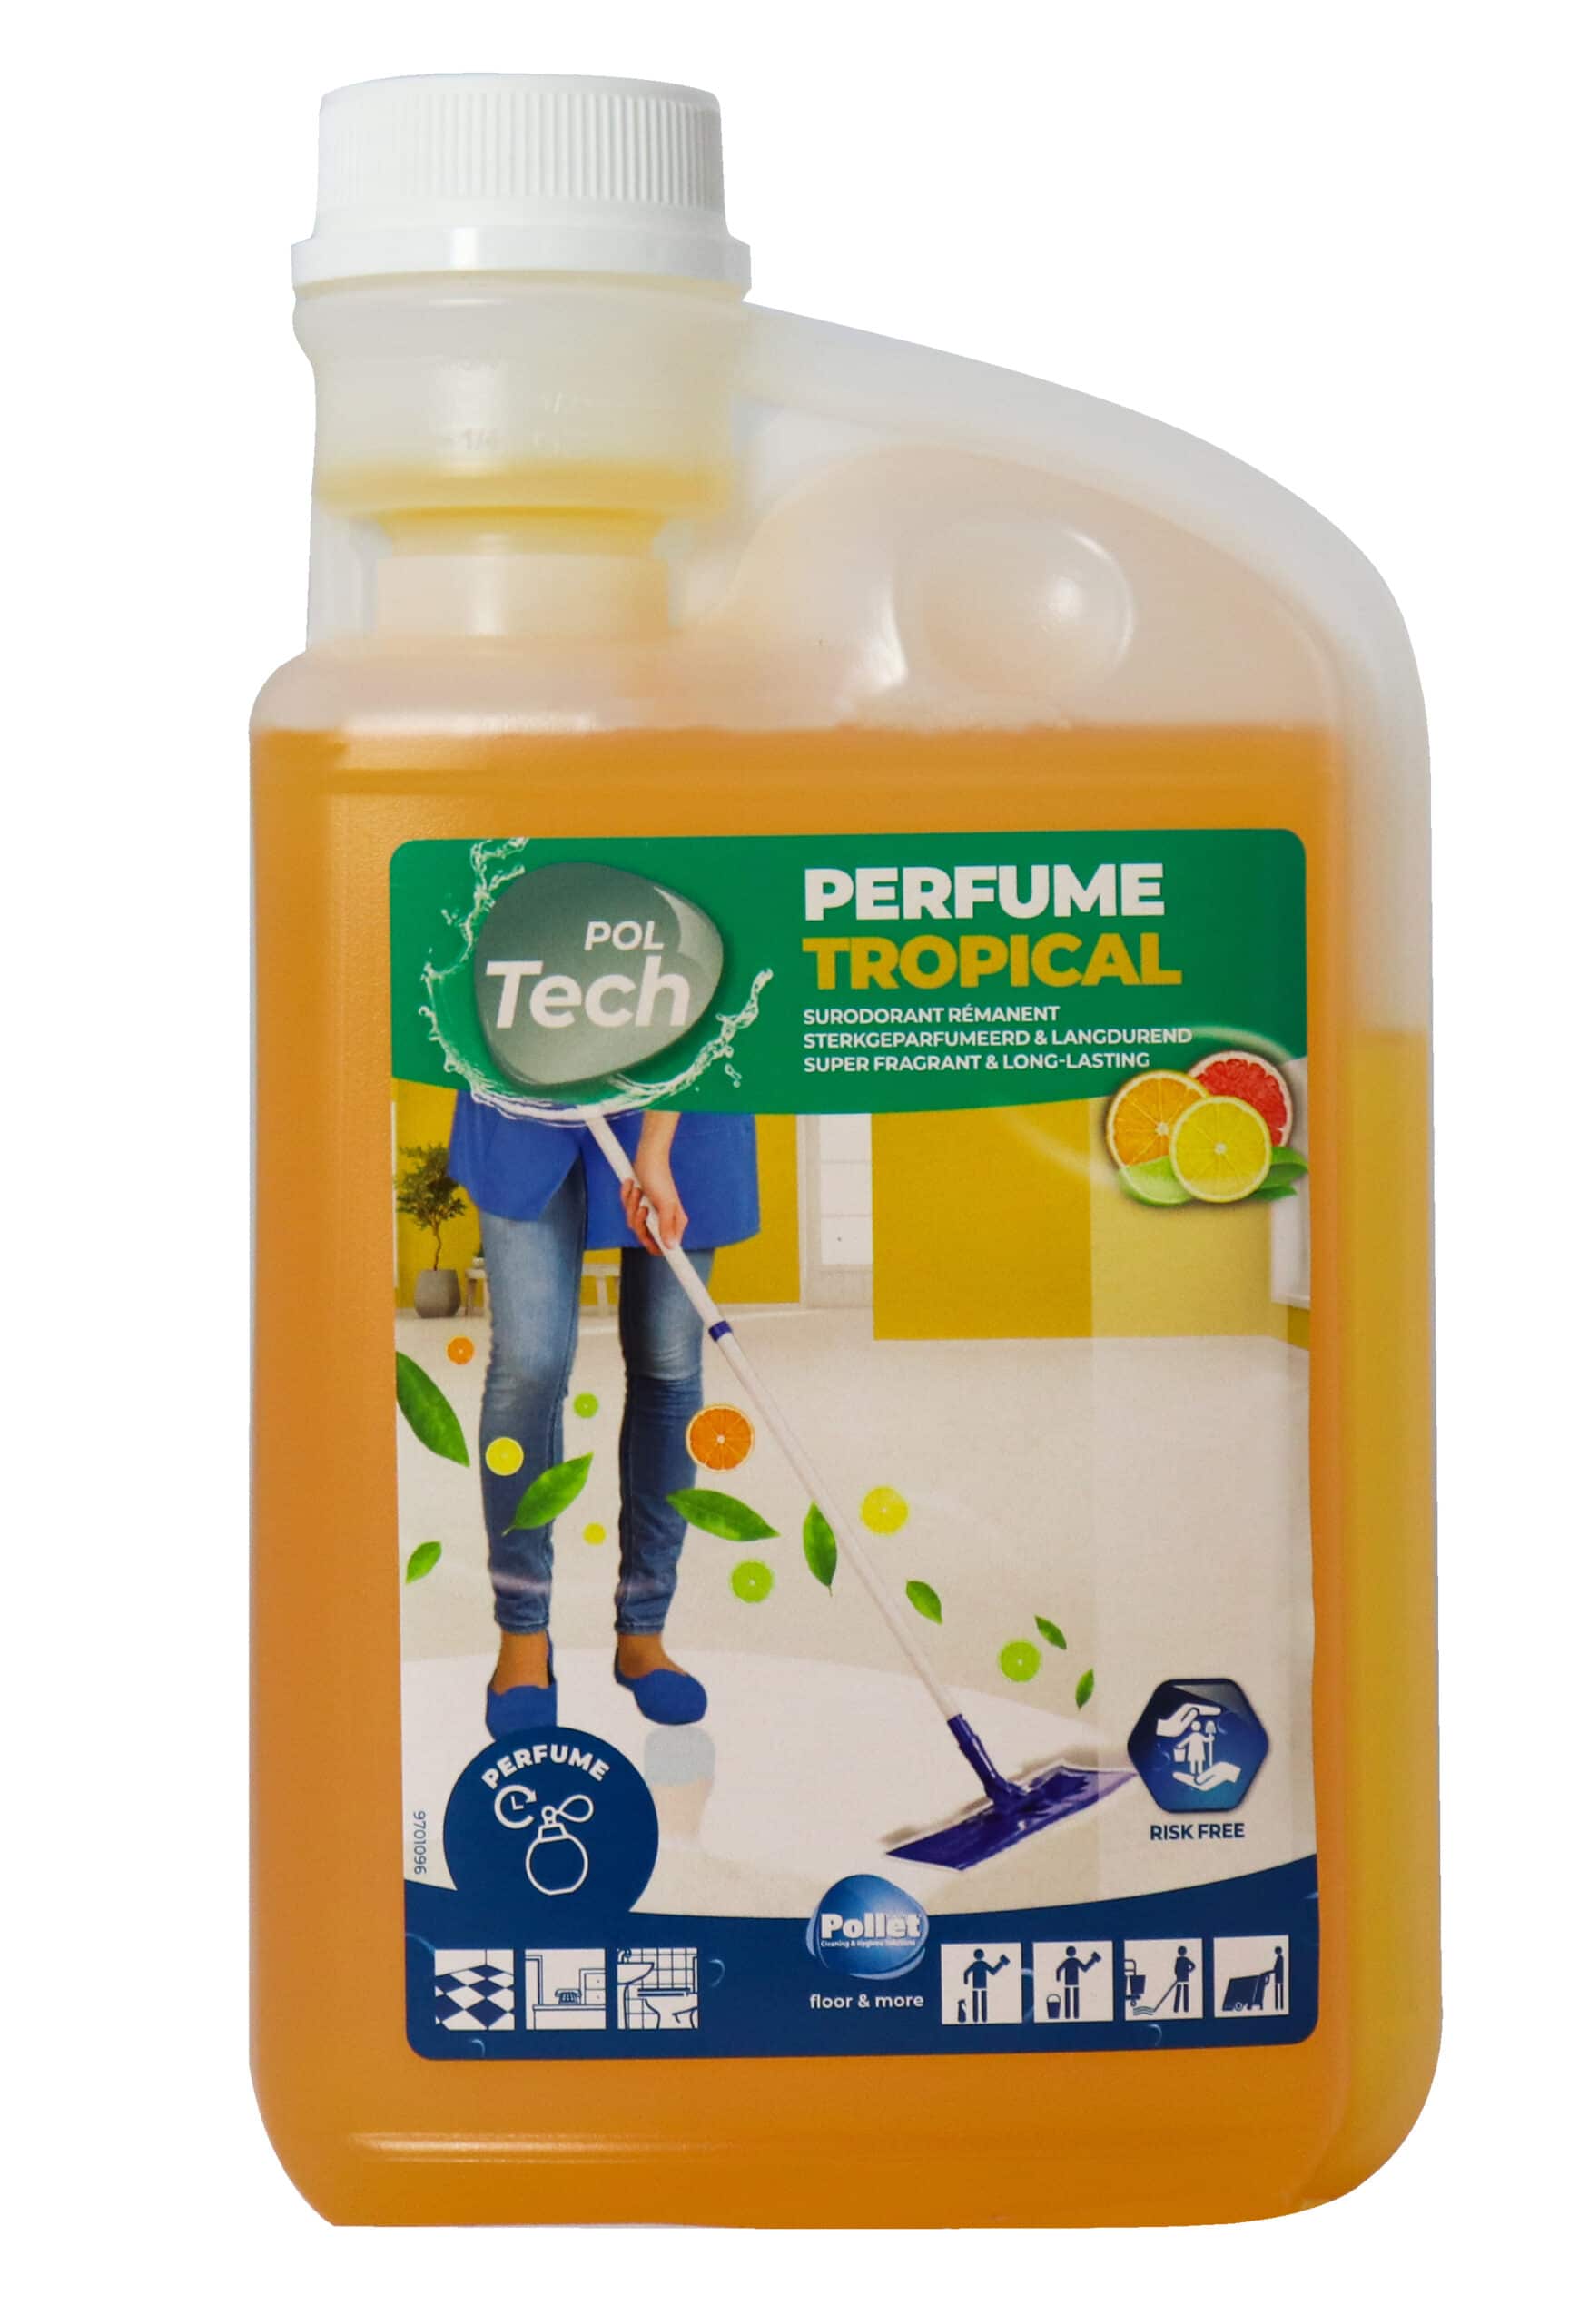 POLTECH PARFUM TROPICAL Detergent 1L